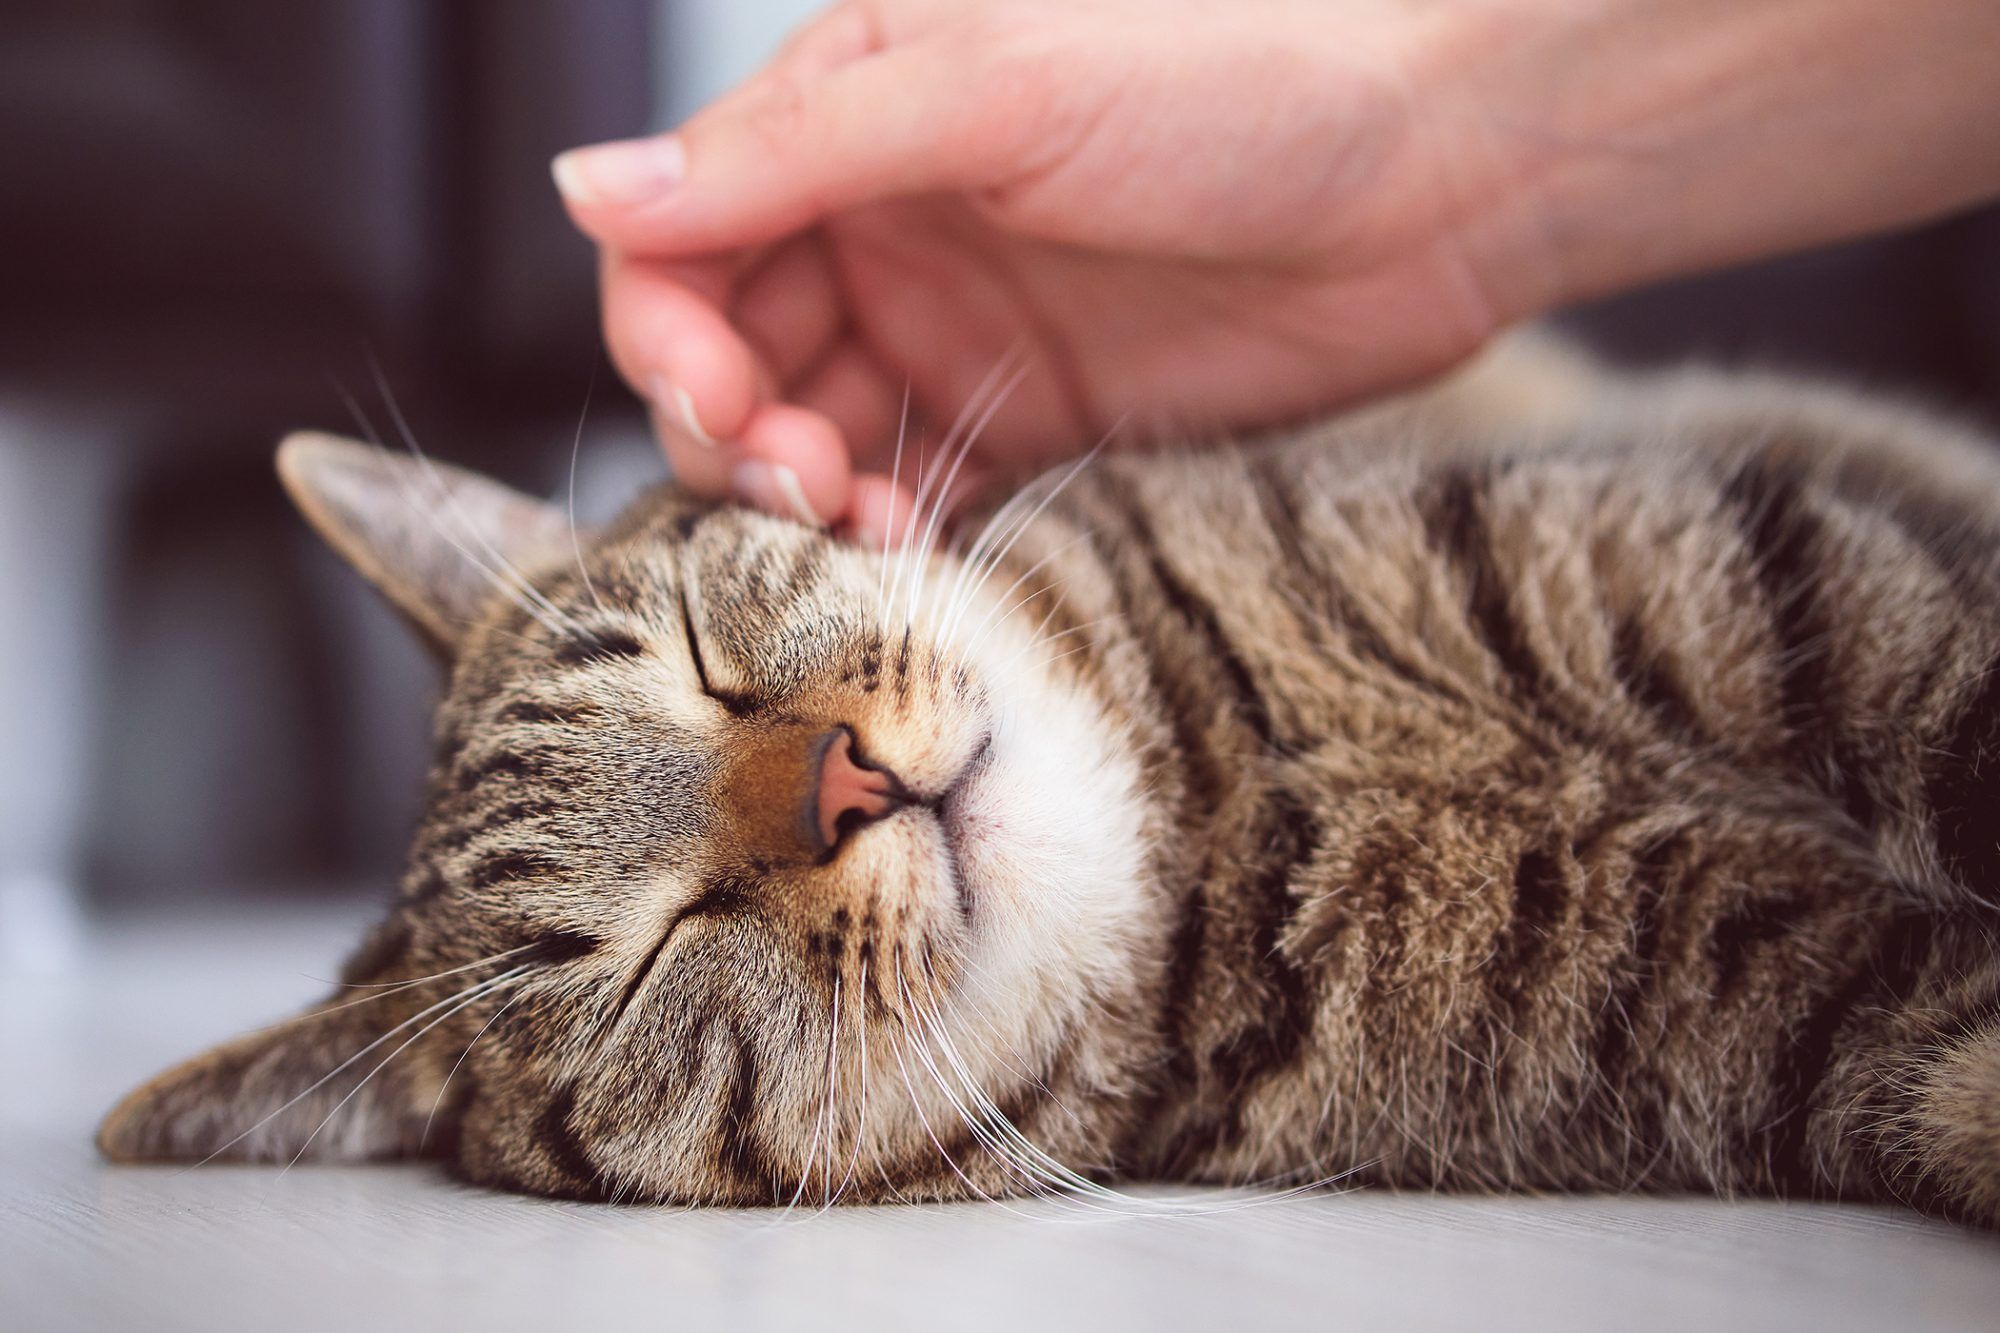 Inilah 8 Penyakit yang Sering Menyerang Kucing Peliharaan, Pemilik Wajib Waspada!